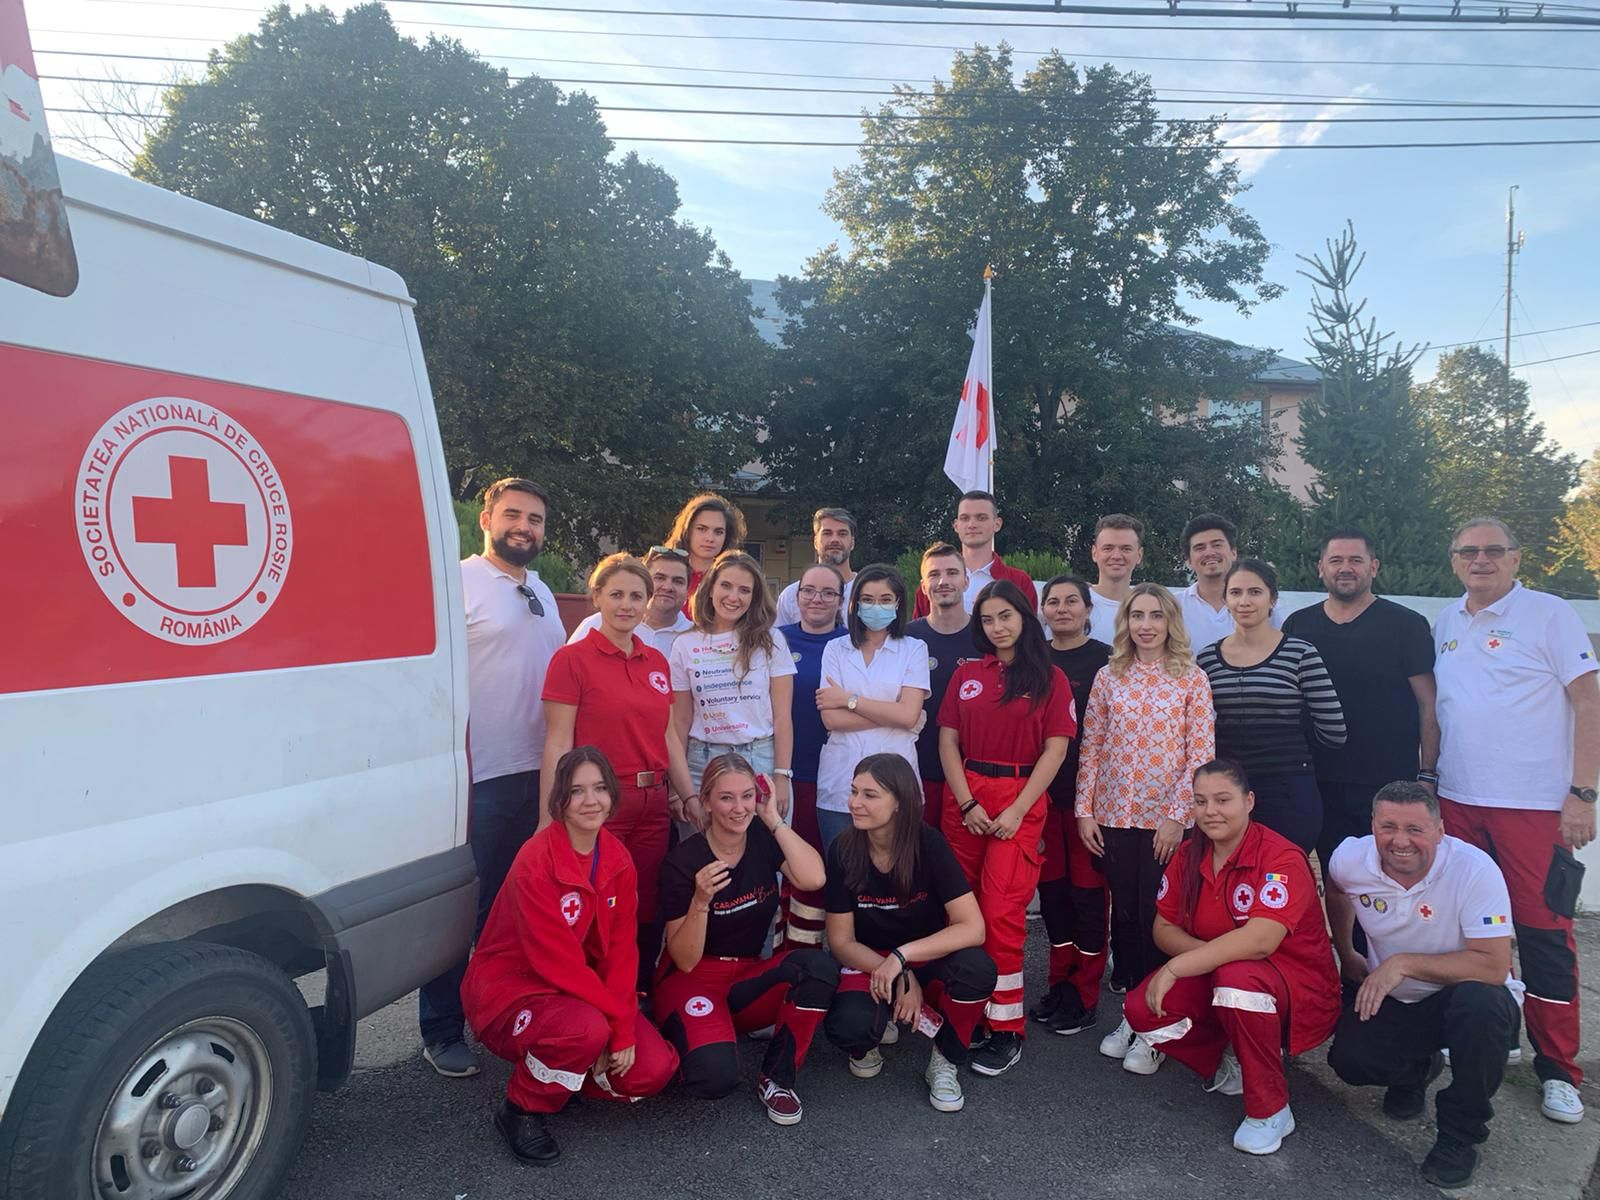 Peste 900 de consultații medicale în două zile prin Caravana de Bine a Crucii Roșii Române